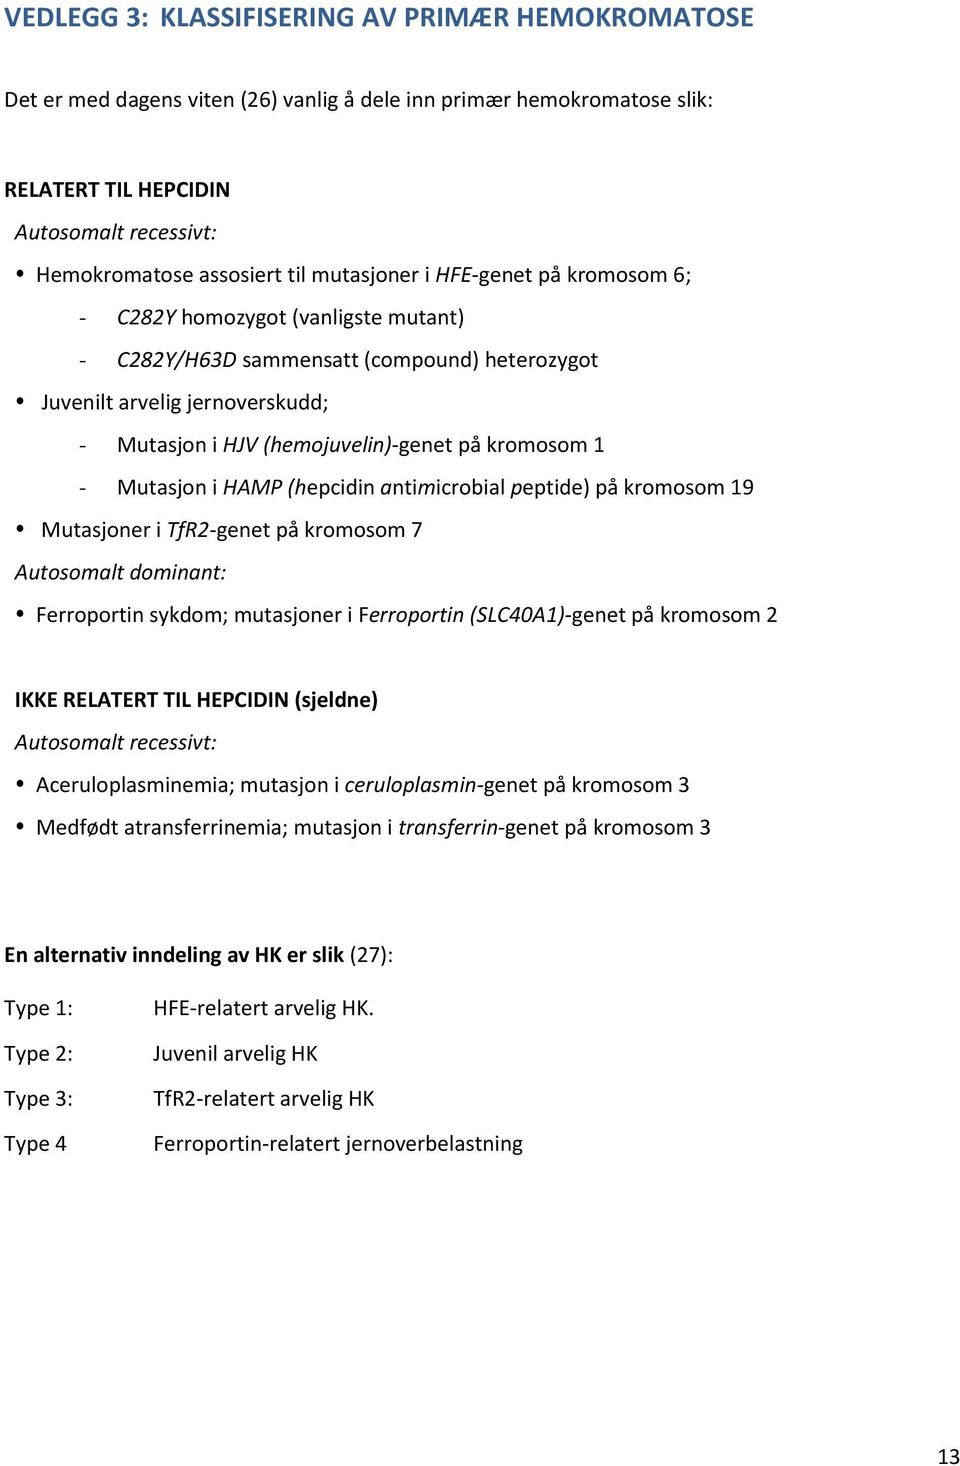 kromosom 1 - Mutasjon i HAMP (hepcidin antimicrobial peptide) på kromosom 19 Mutasjoner i TfR2-genet på kromosom 7 Autosomalt dominant: Ferroportin sykdom; mutasjoner i Ferroportin (SLC40A1)-genet på